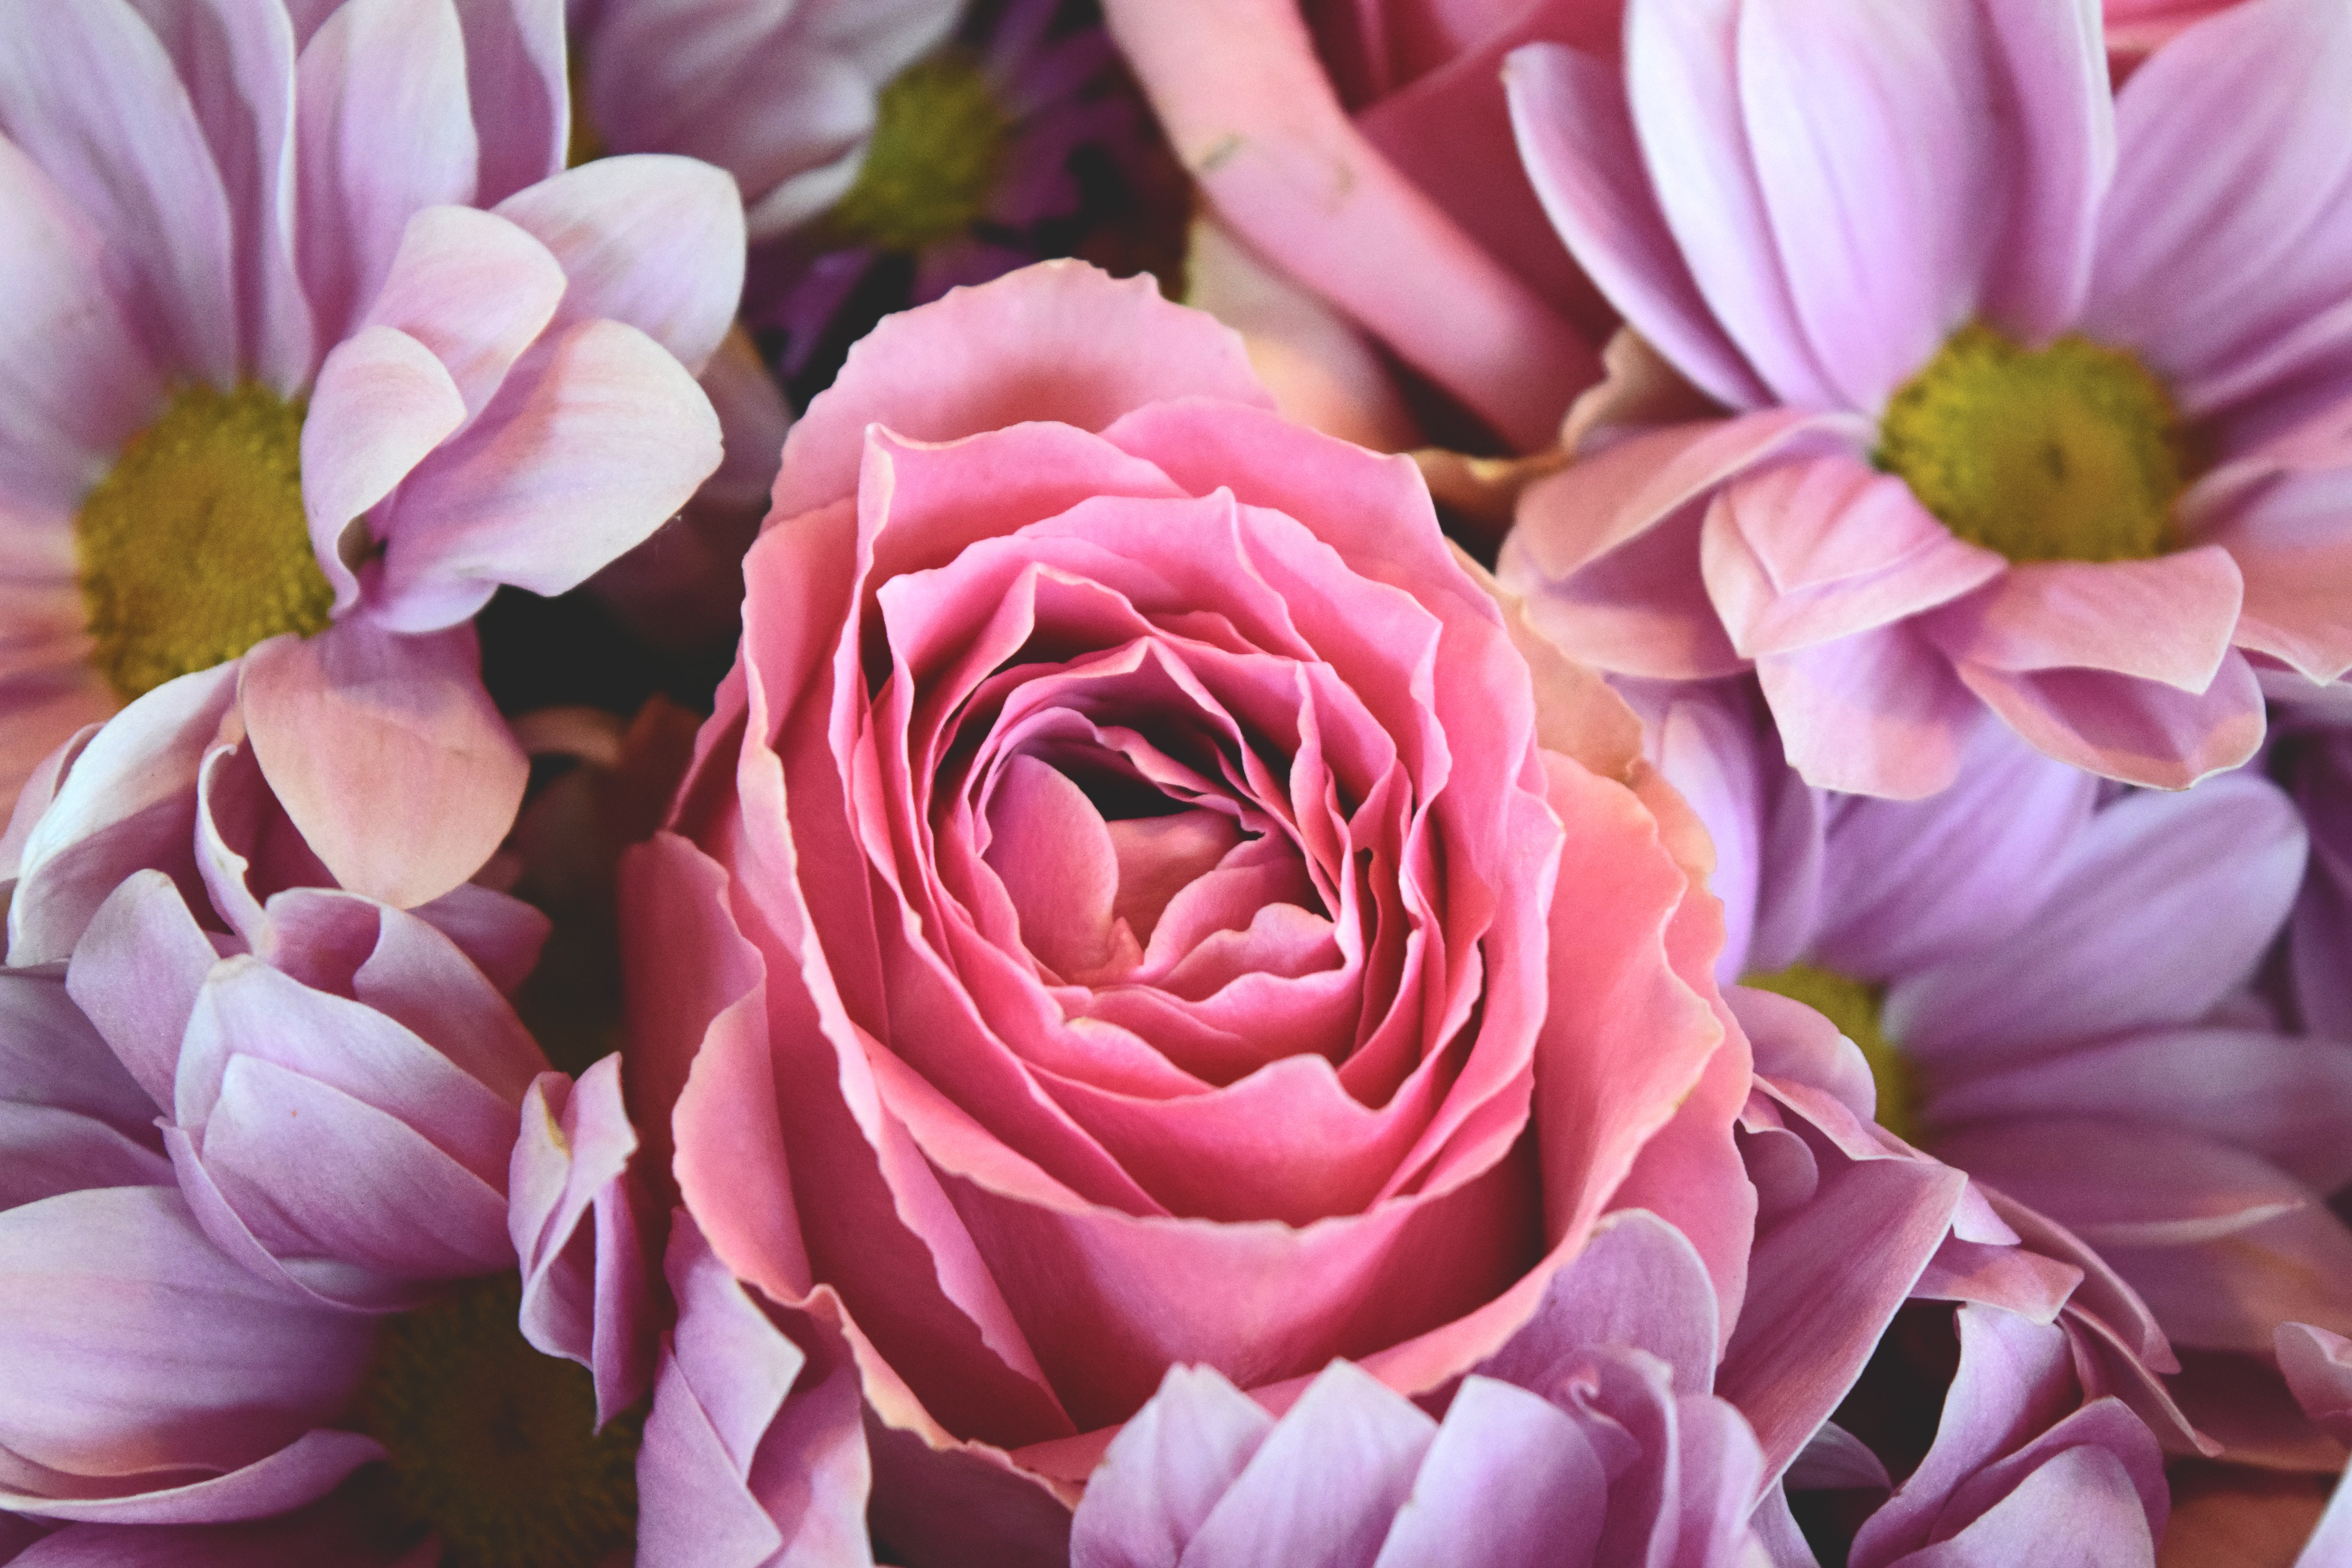 Фото в цвете. Роза Кайли. Пионовидные пурпурные розы. Розовые цветы. Прекрасные цветы.